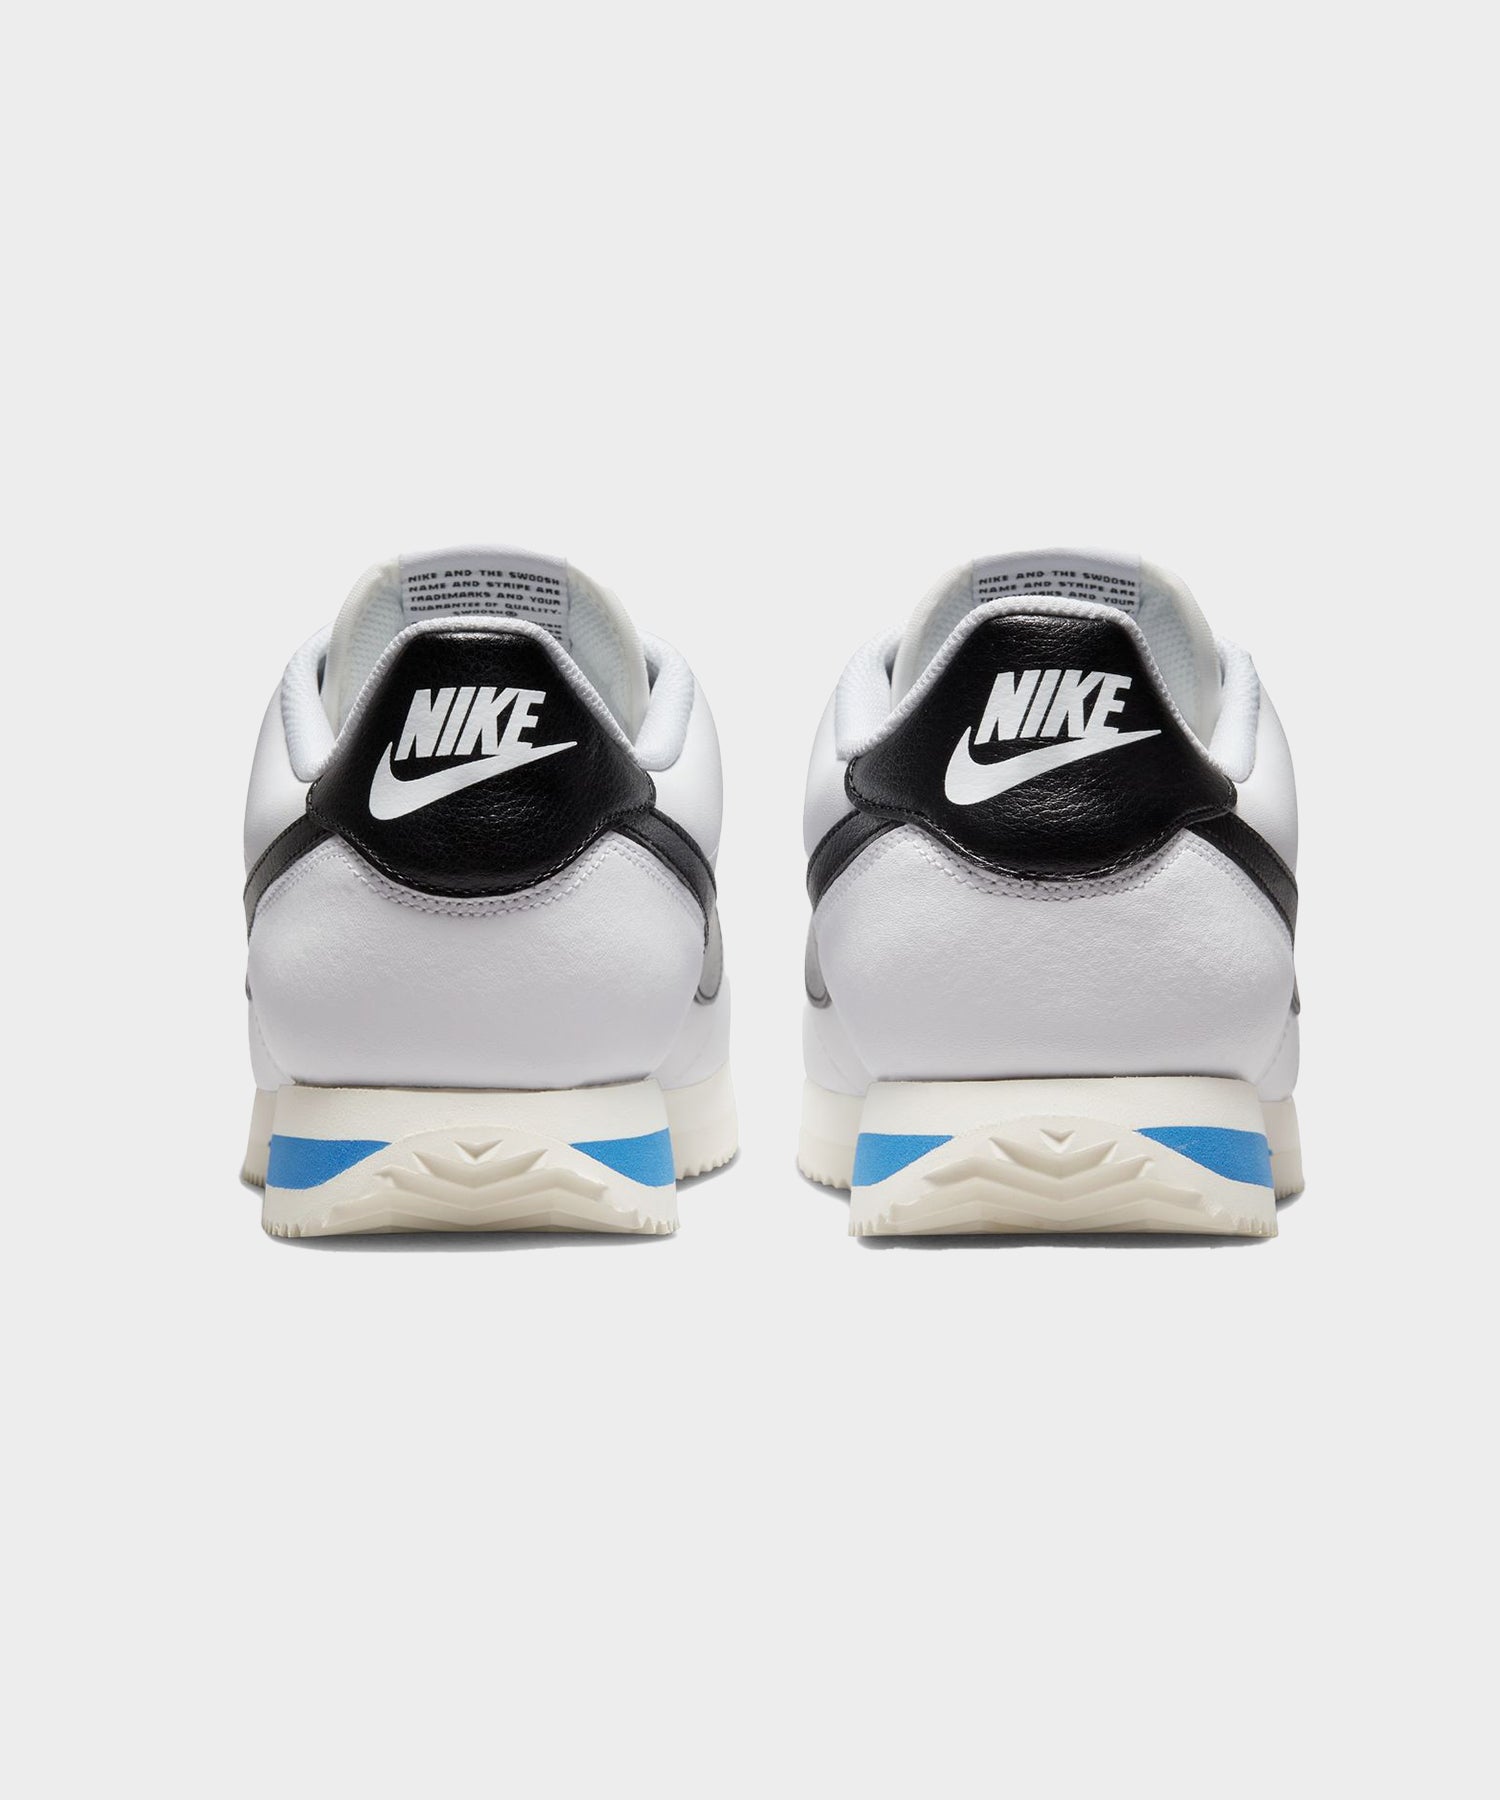 Nike Cortez Nylon Black / White Size 11